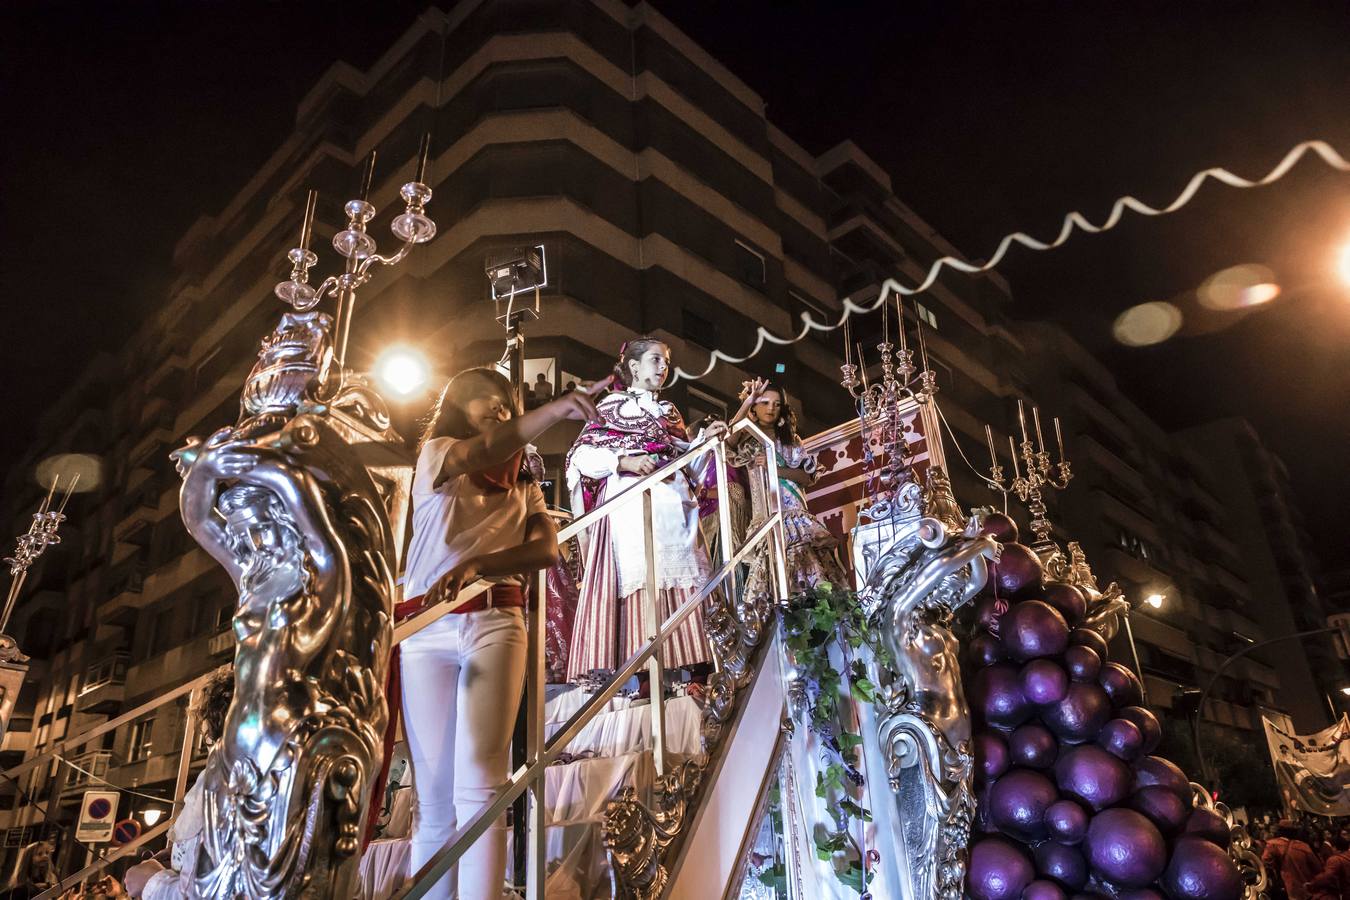 La carroza de la Federación de Casas Regionales, alusiva al lujo de disfrutar del Rioja en la mesa, ha ganado hoy el concurso del tradicional desfile de carrozas de las Fiestas de San Mateo y 61 Vendimia Riojana, de Logroño.